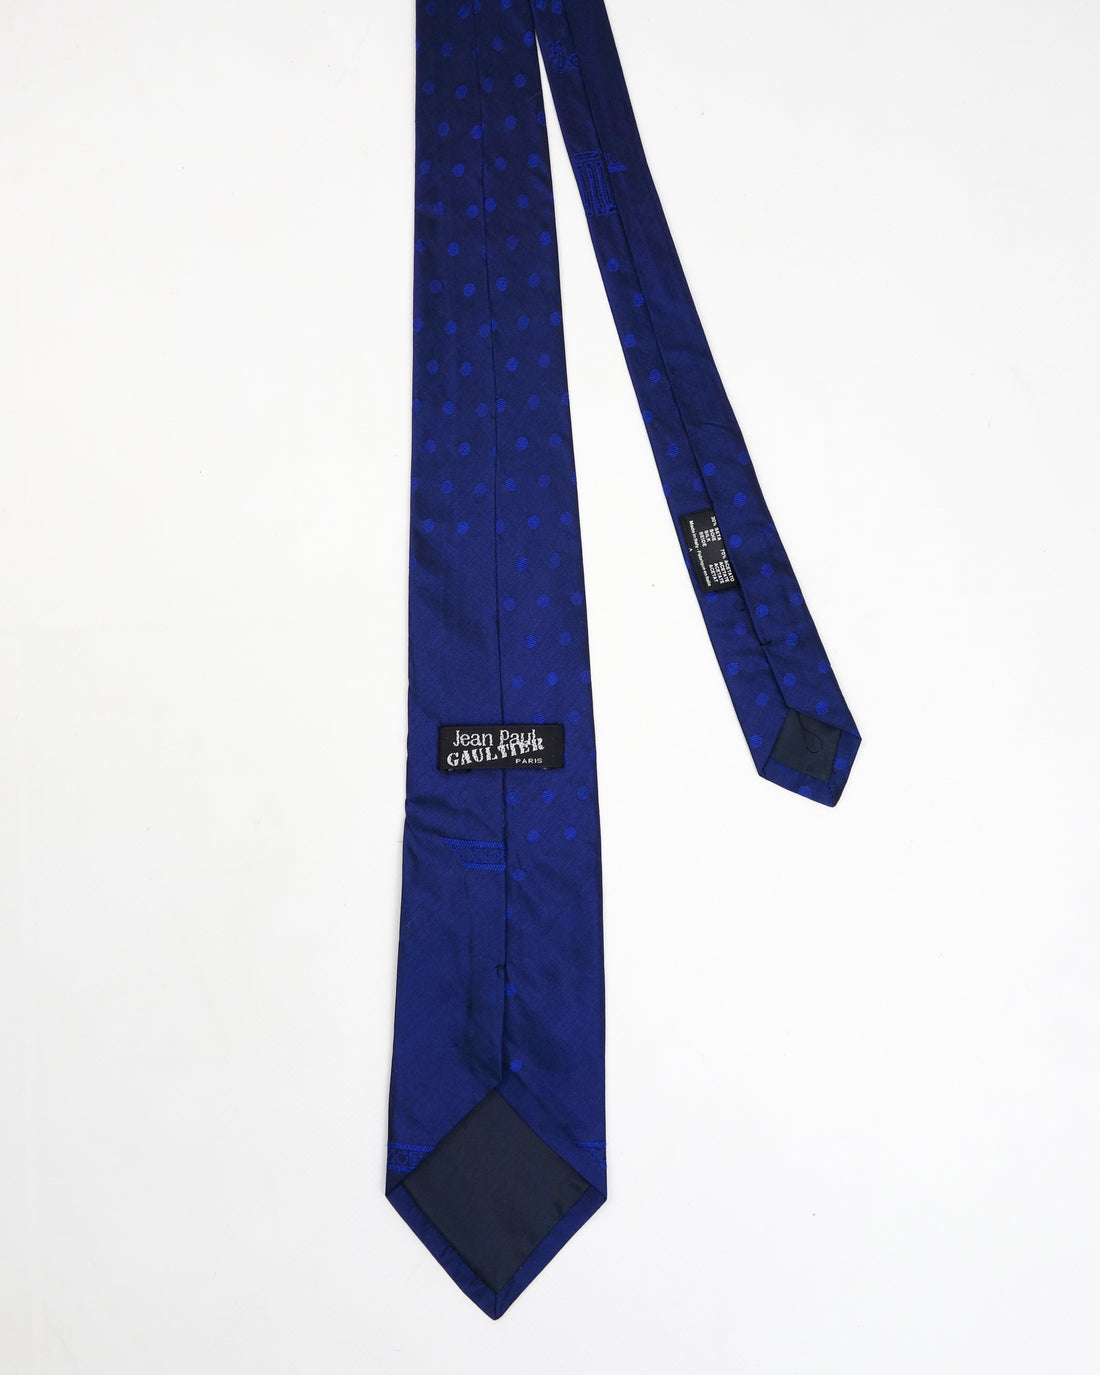 Jean Paul Gaultier Metallic Details Blue Tie 2000´s